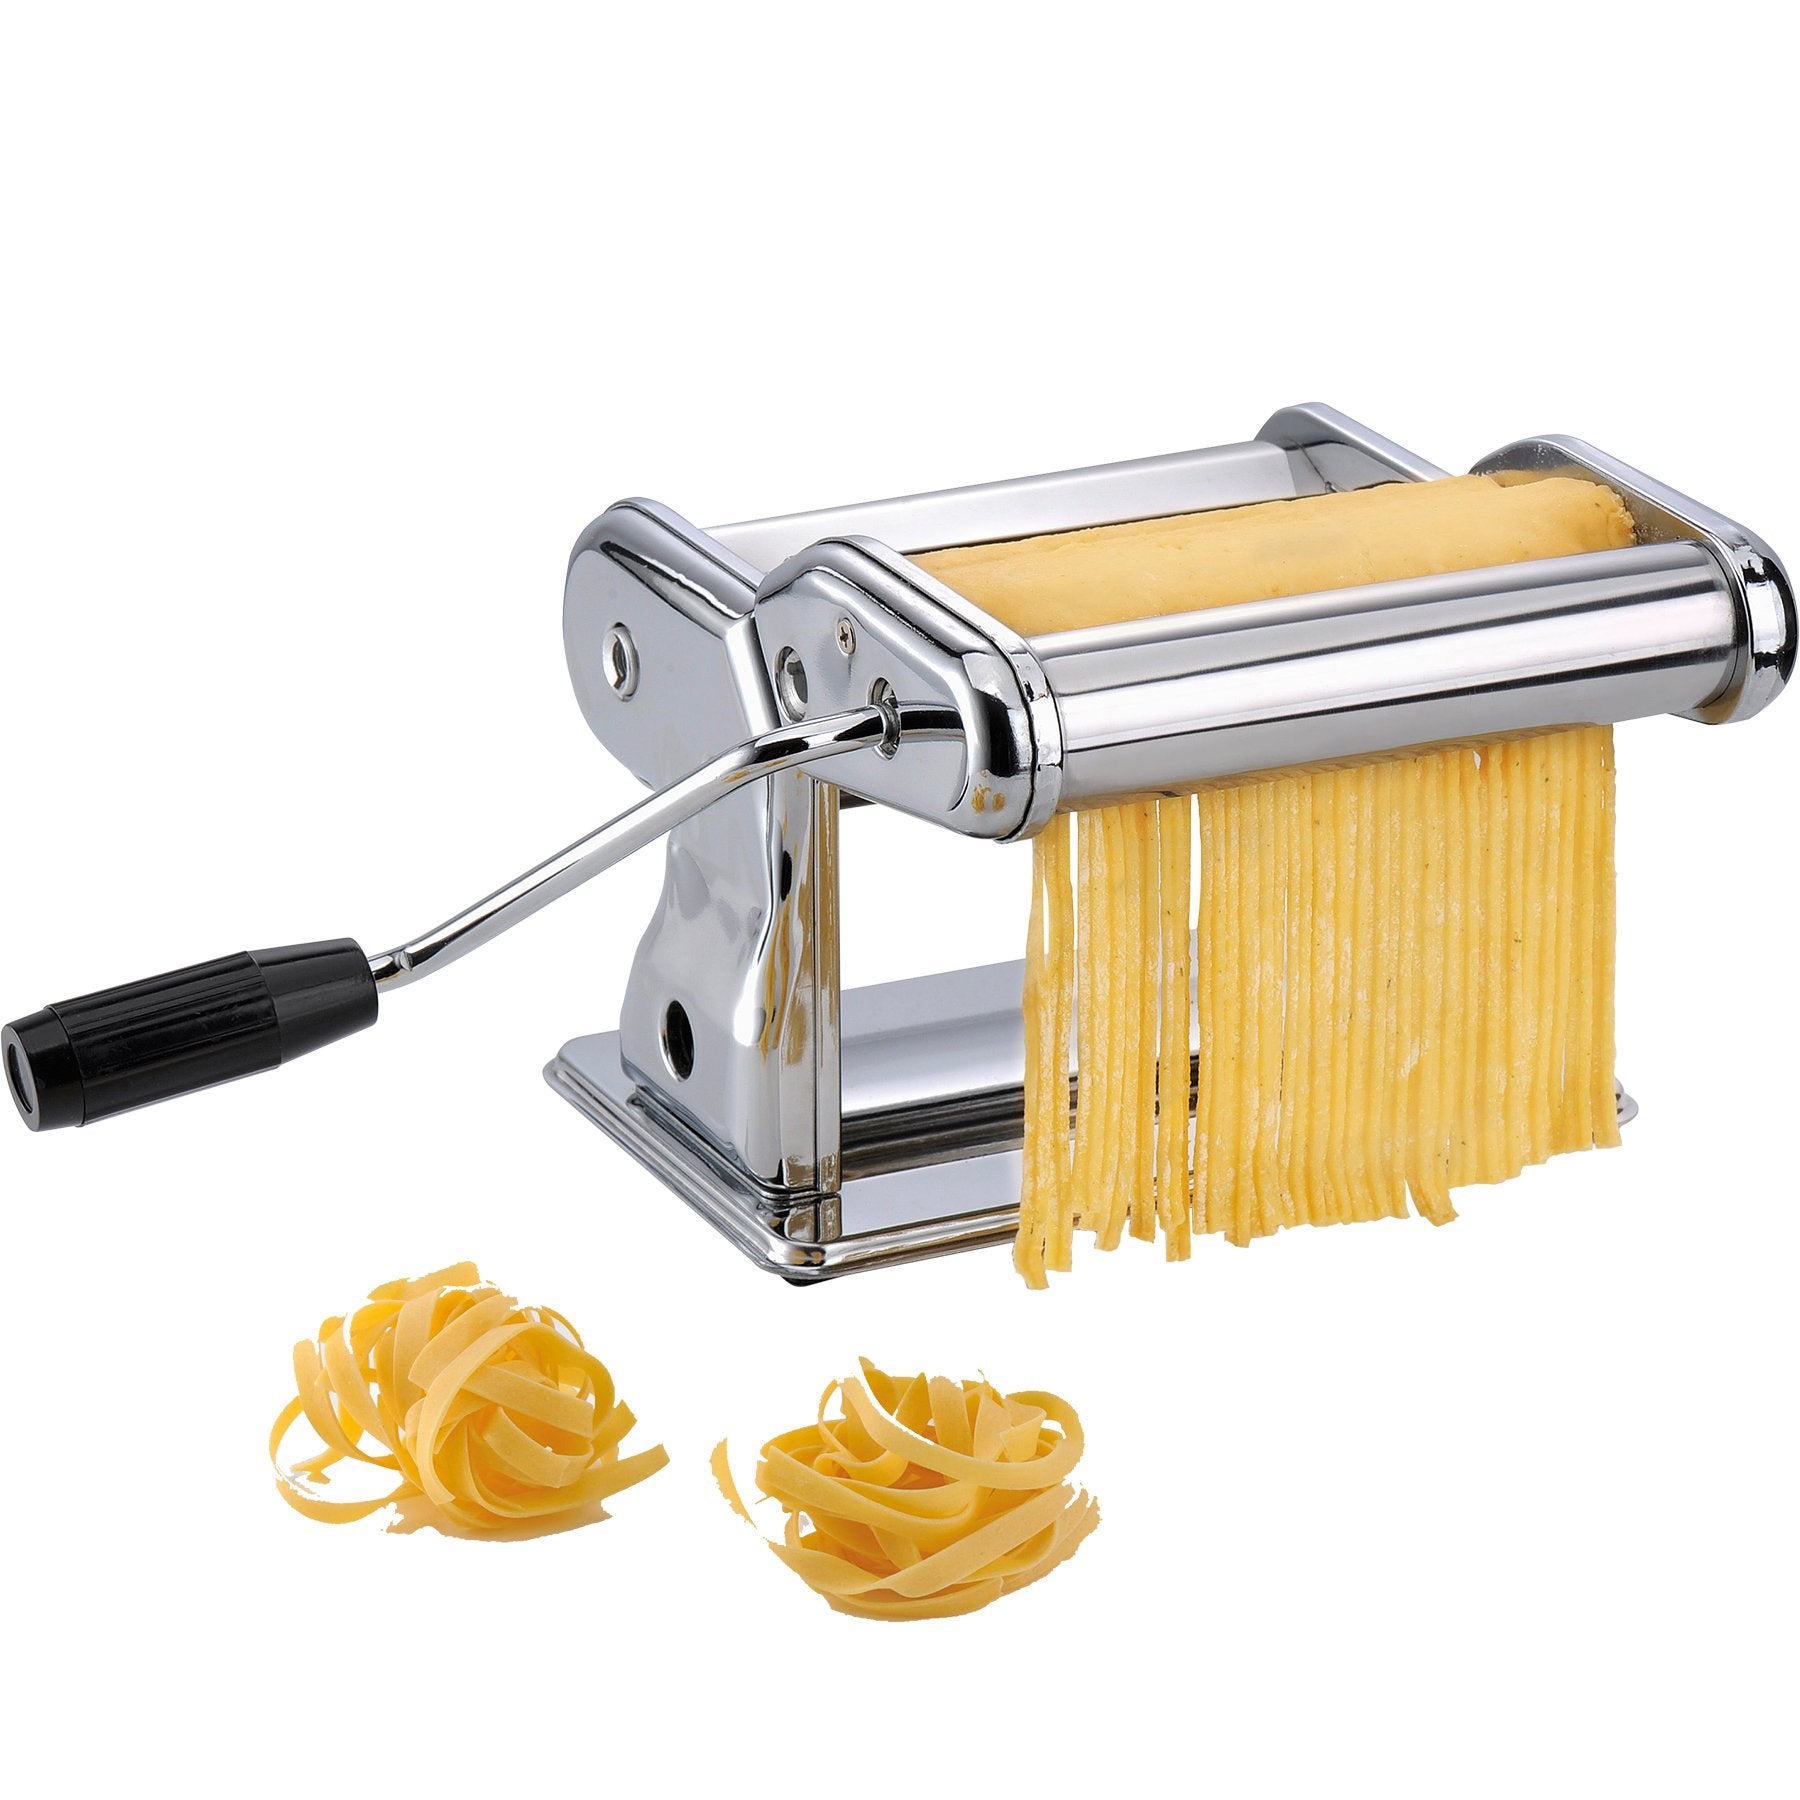 GEFU Pasta Machine Pasta Perfetta Brillante - Whole and All